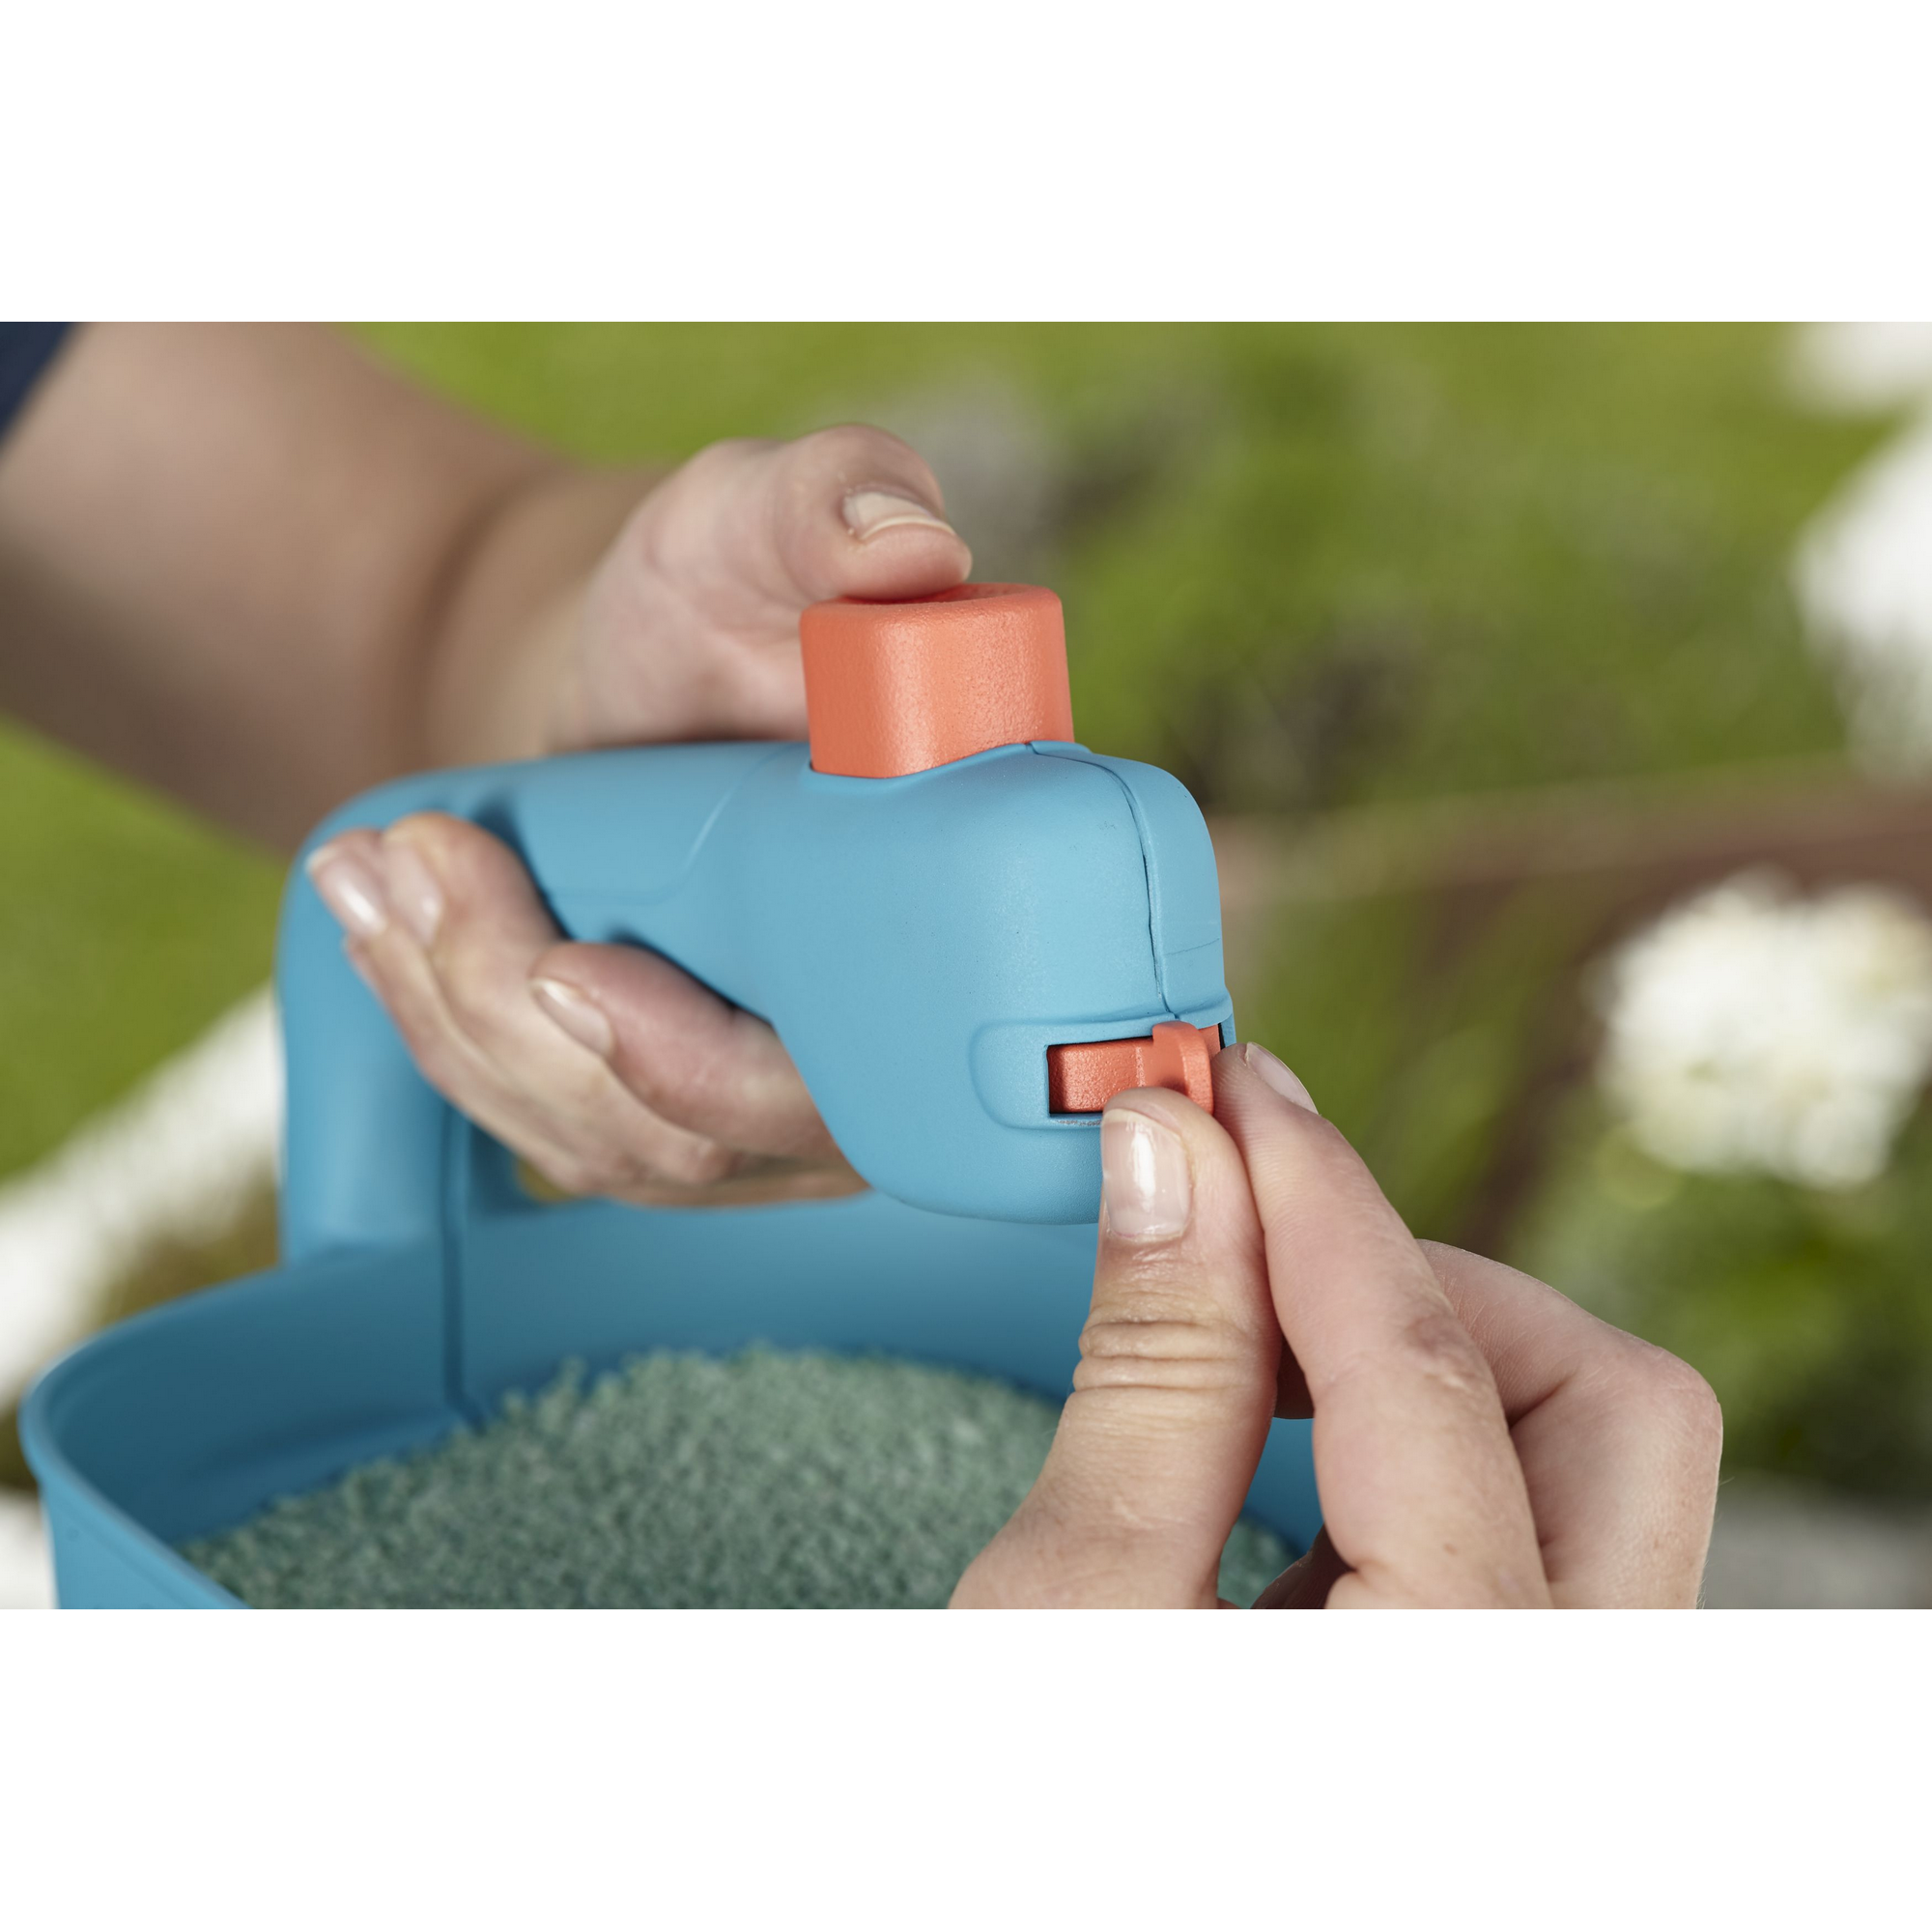 Handstreuer-Set mit Gartenhandschuh + product picture